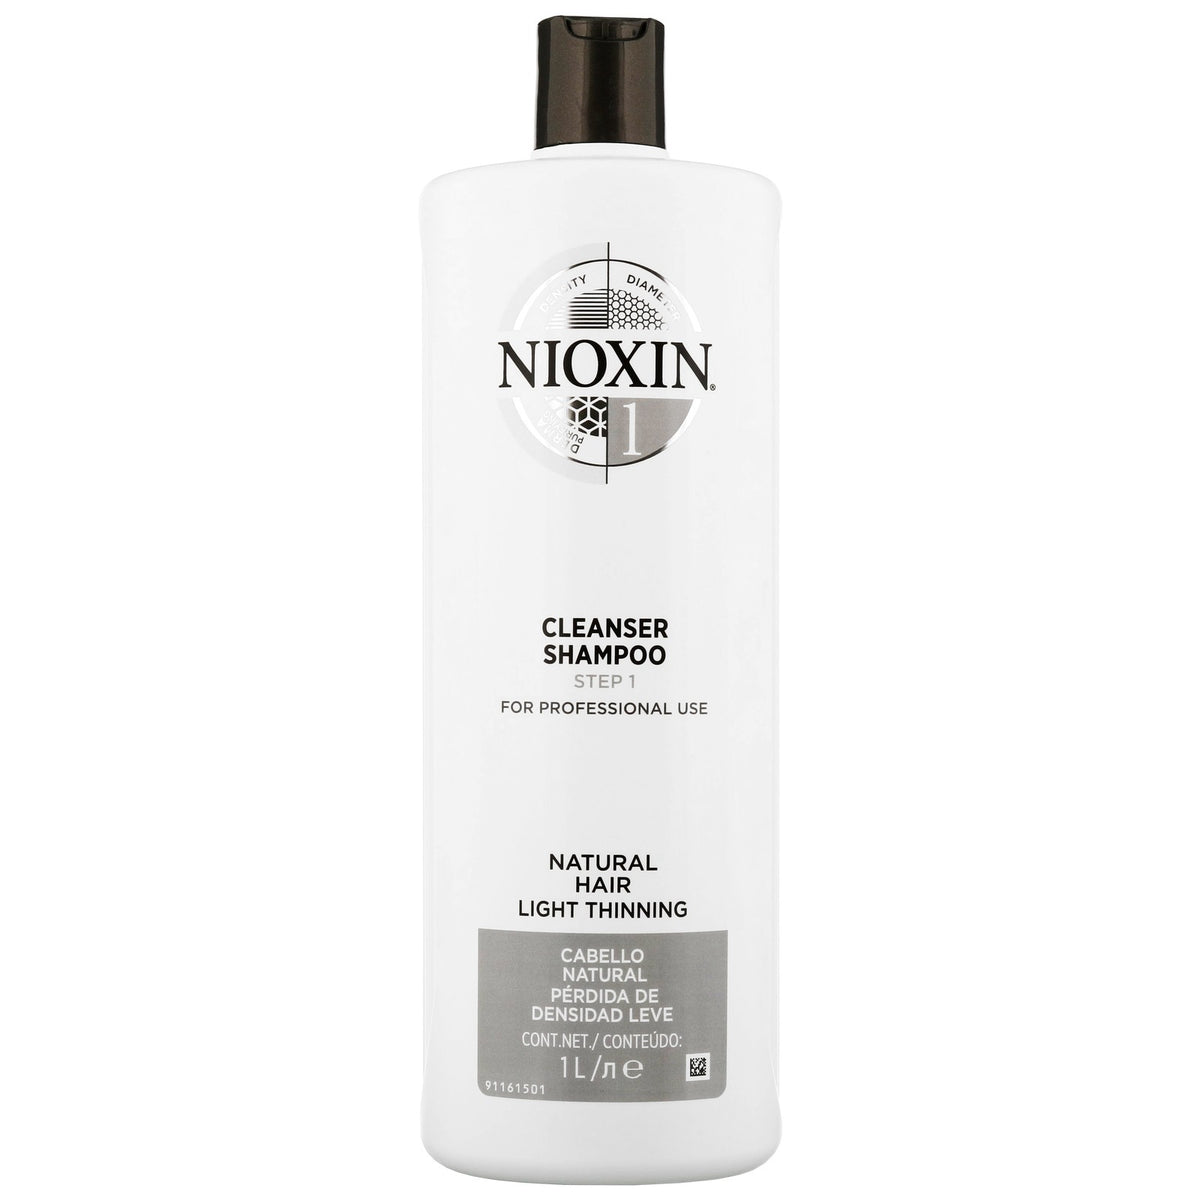 Nioxin Cleanser Shampoo - Natural Hair Light Thinning